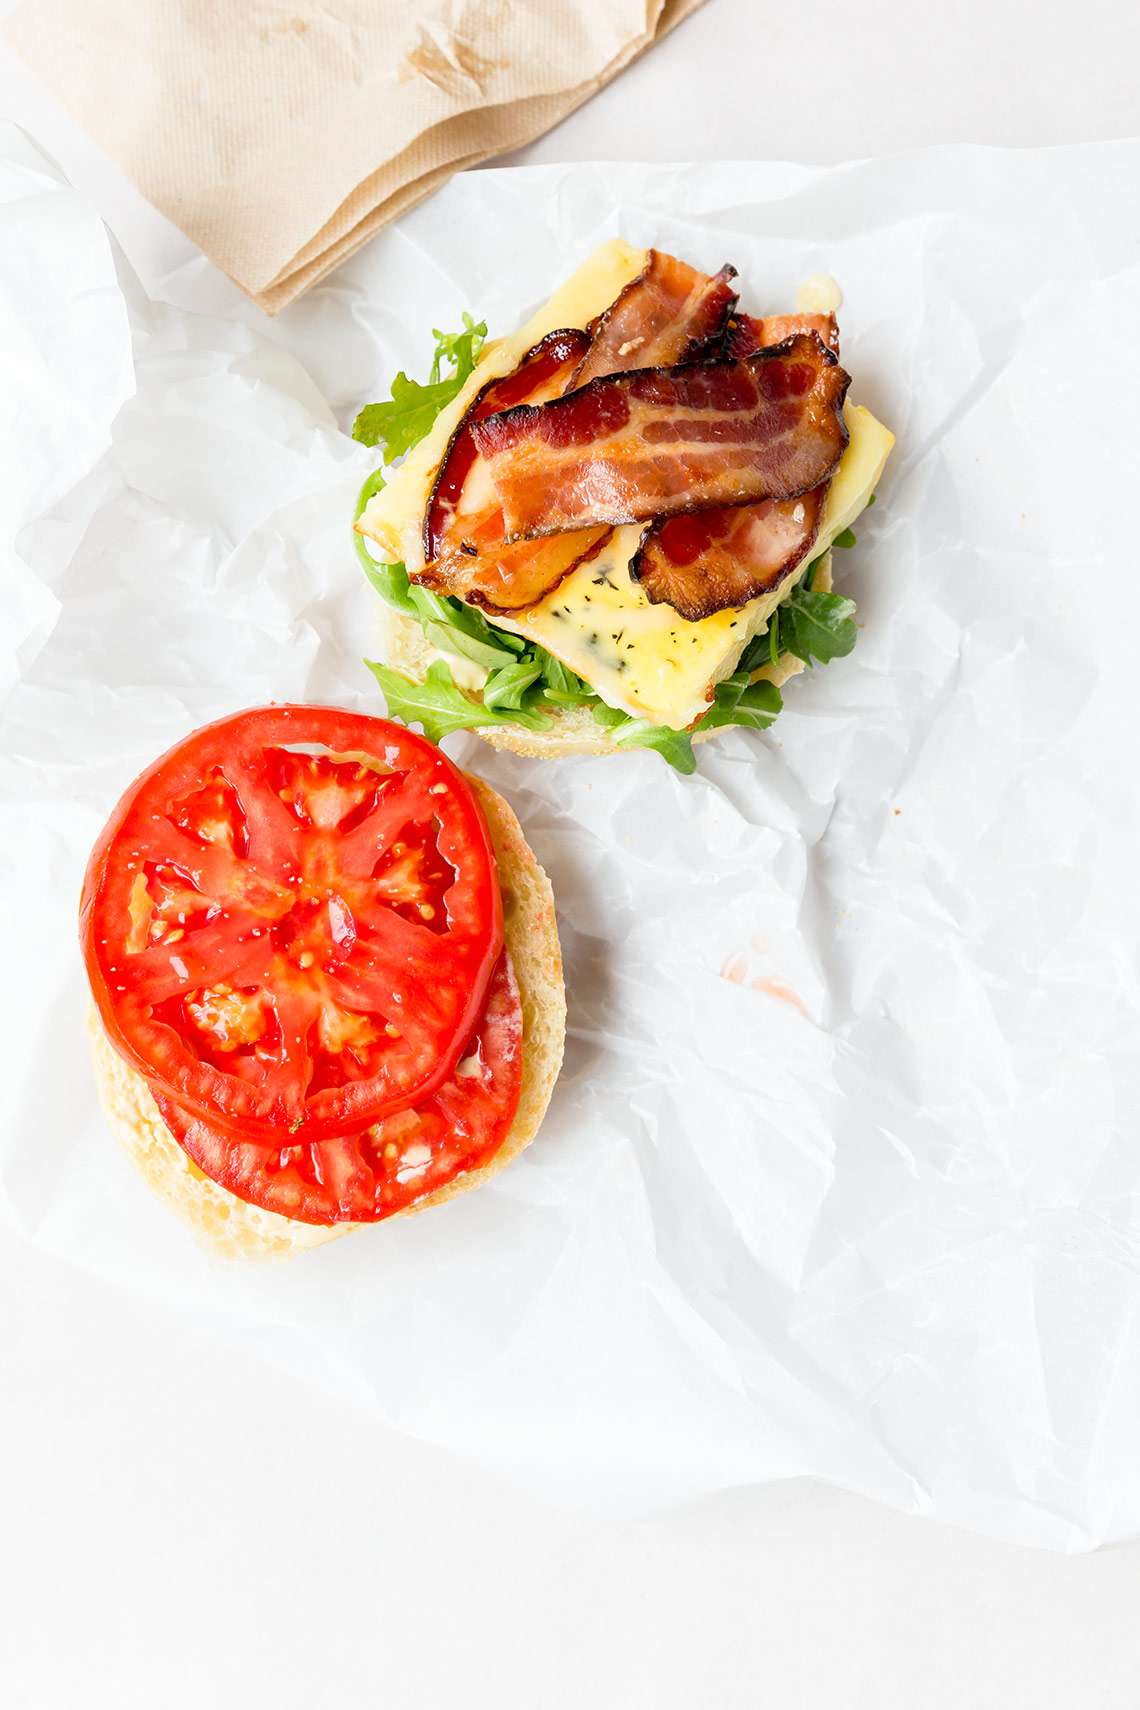 Kristin Teig Photography | Egg and bacon sandwich from Flour Bakery